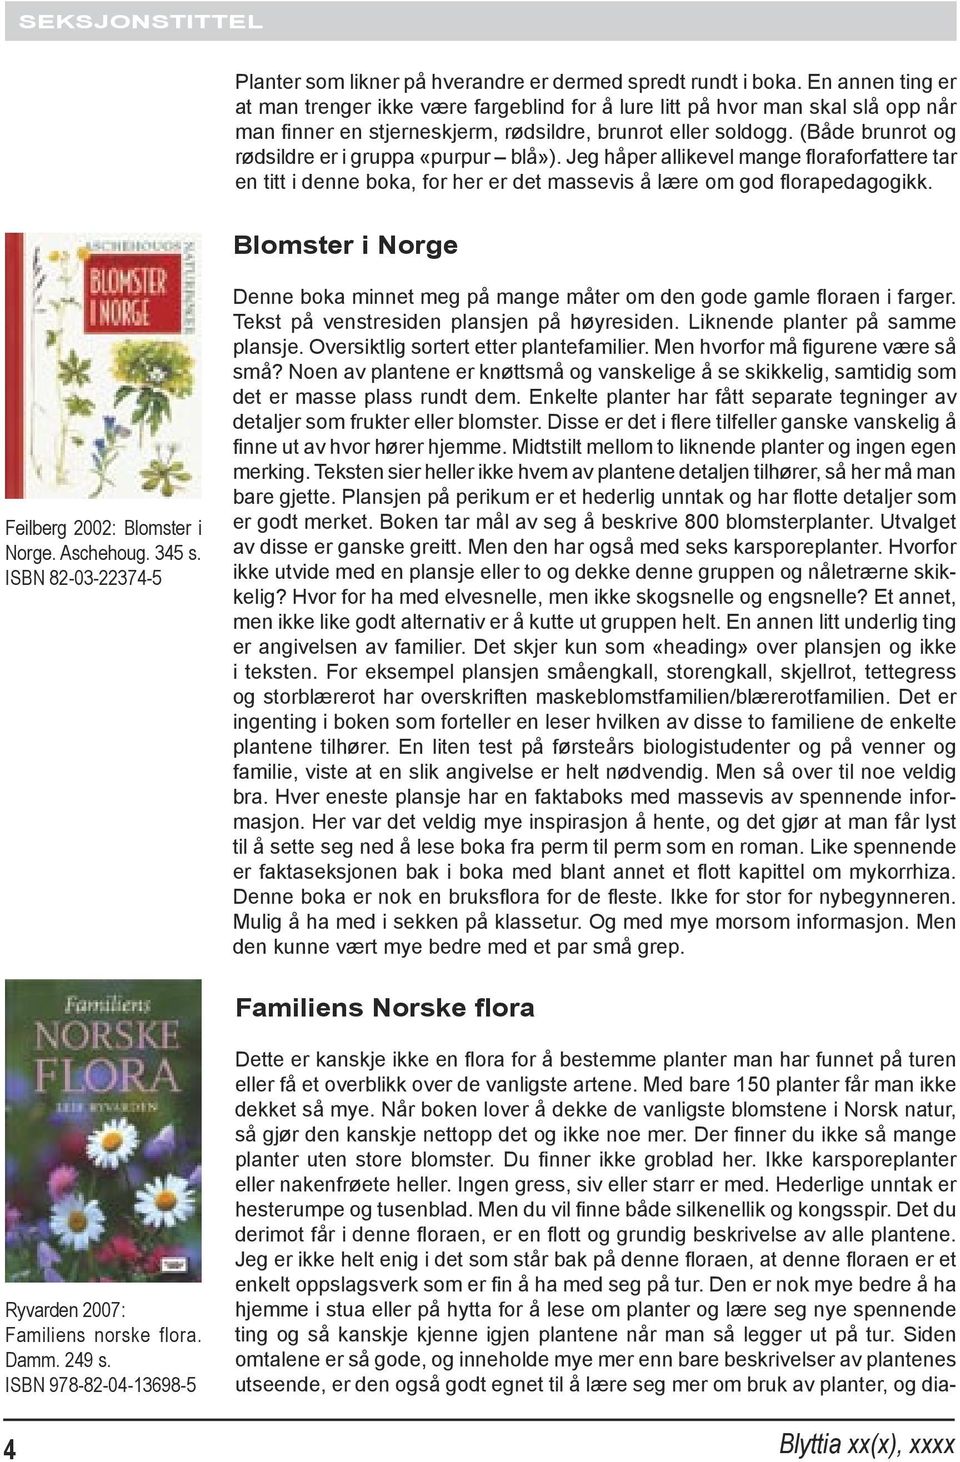 (Både brunrot og rødsildre er i gruppa «purpur blå»). Jeg håper allikevel mange floraforfattere tar en titt i denne boka, for her er det massevis å lære om god florapedagogikk.